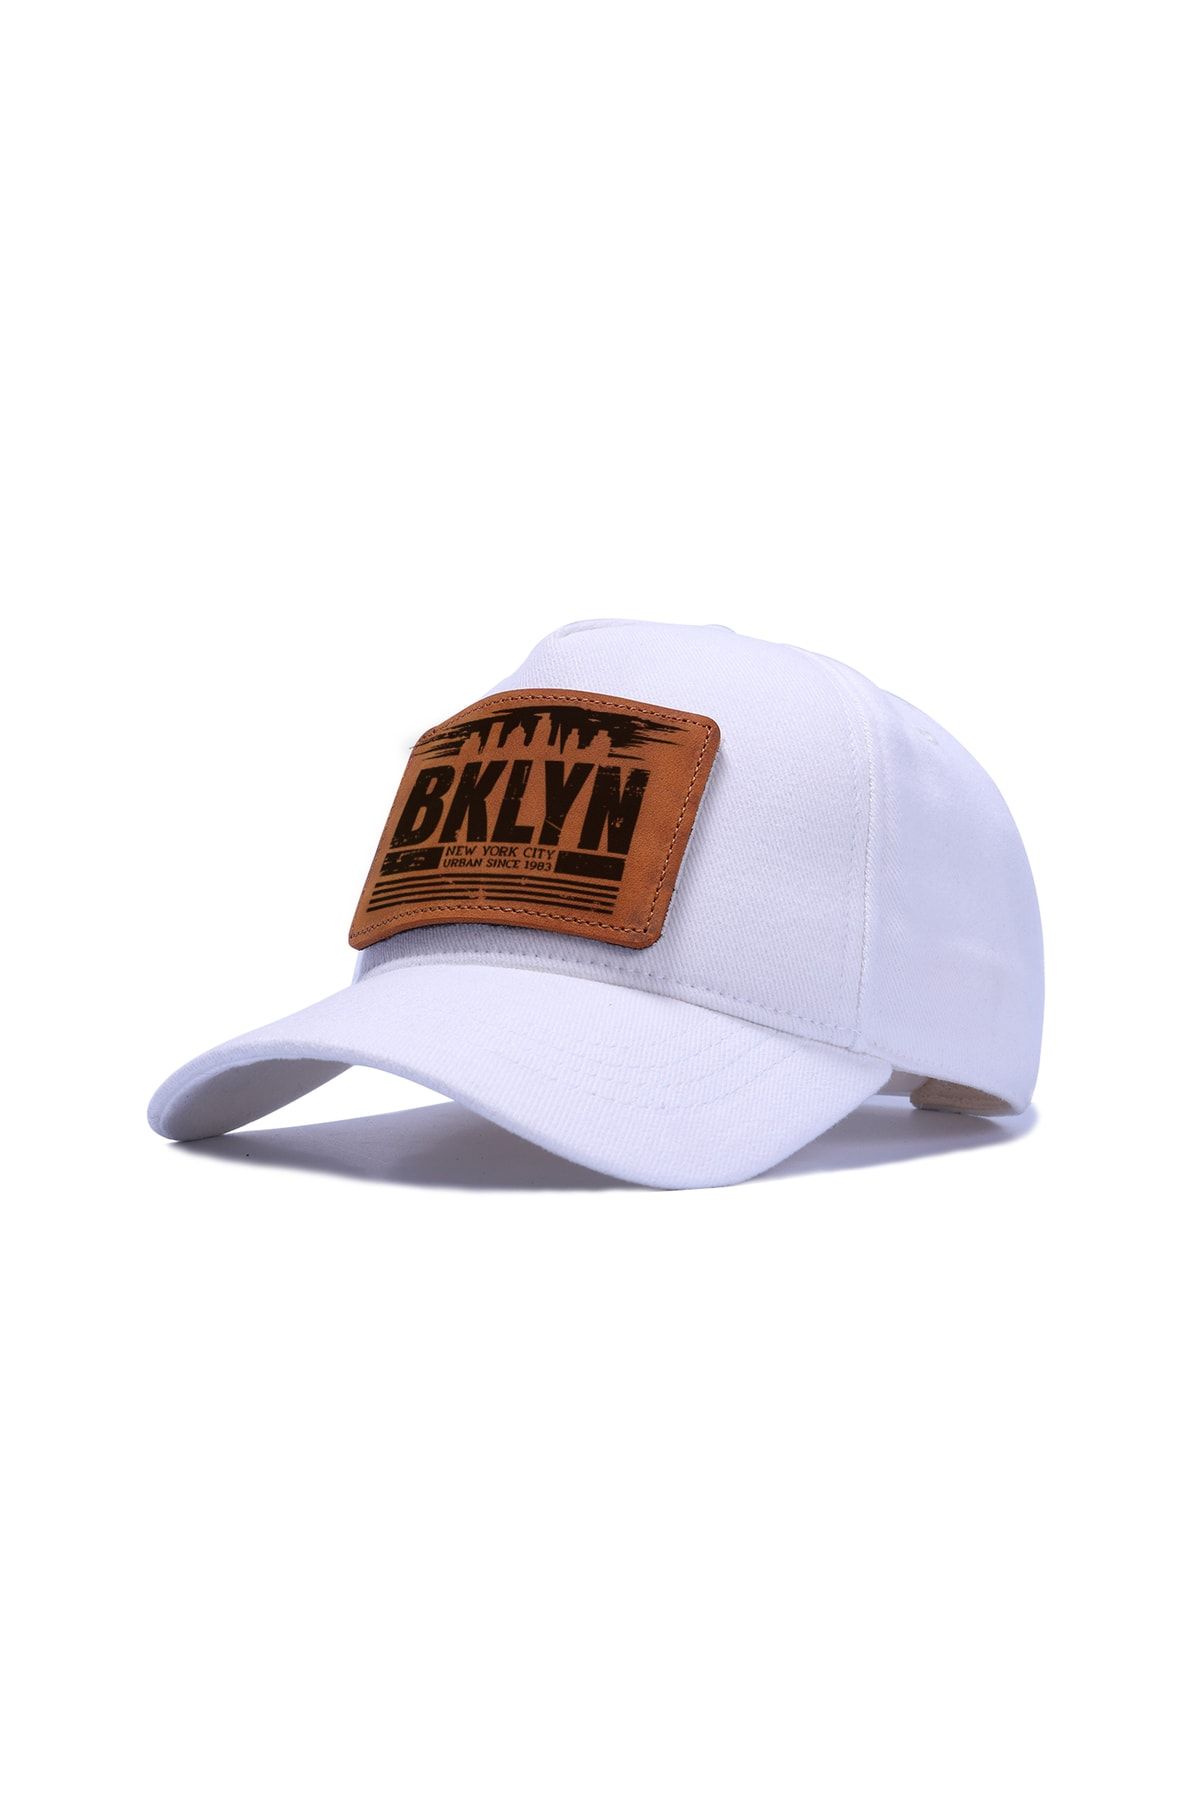 BlackBörk V2 Bklyn Logolu Unisex Beyaz Filesiz Şapka